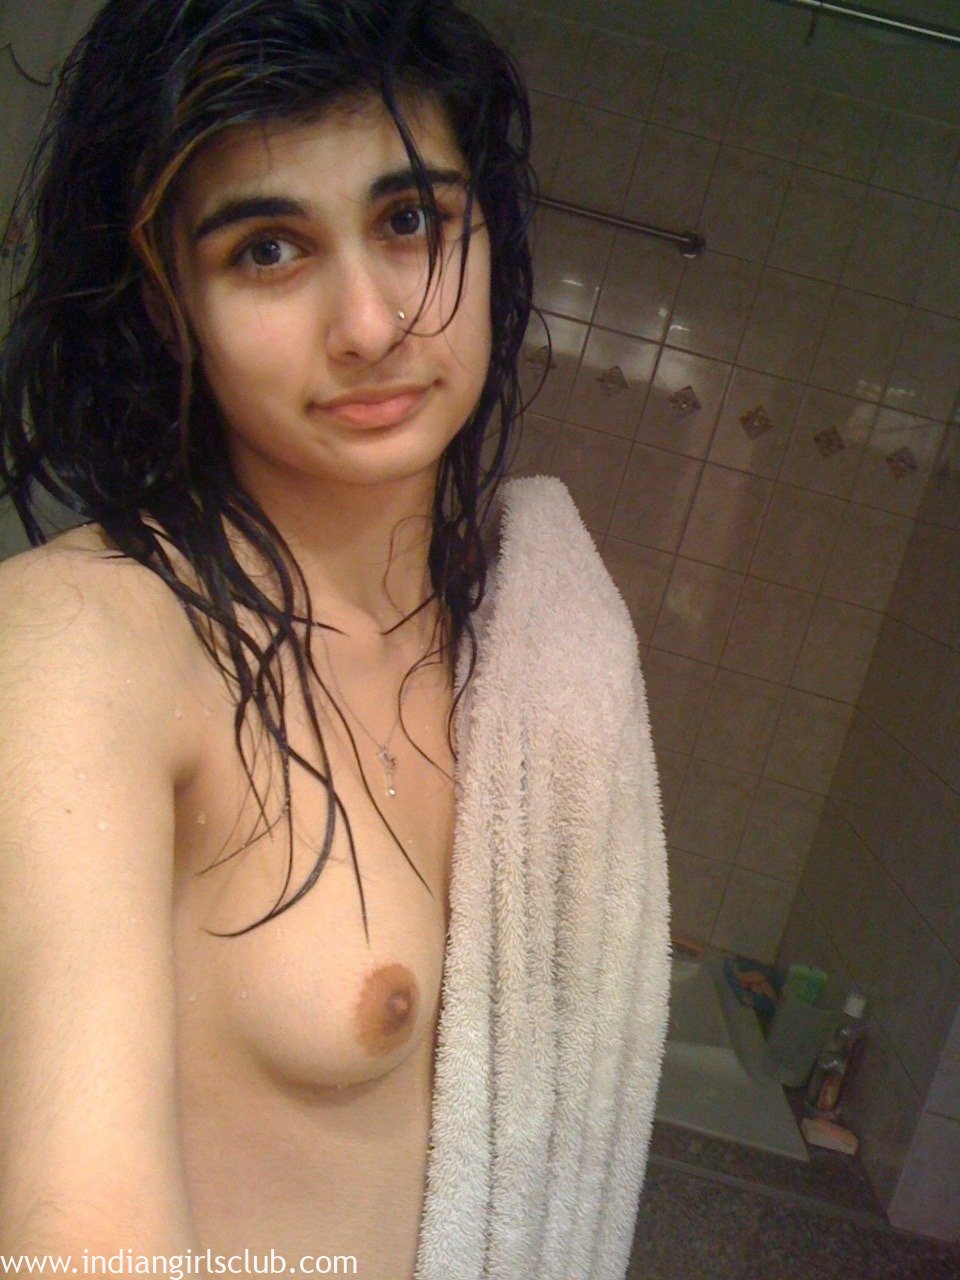 Pakistani nude girls photos